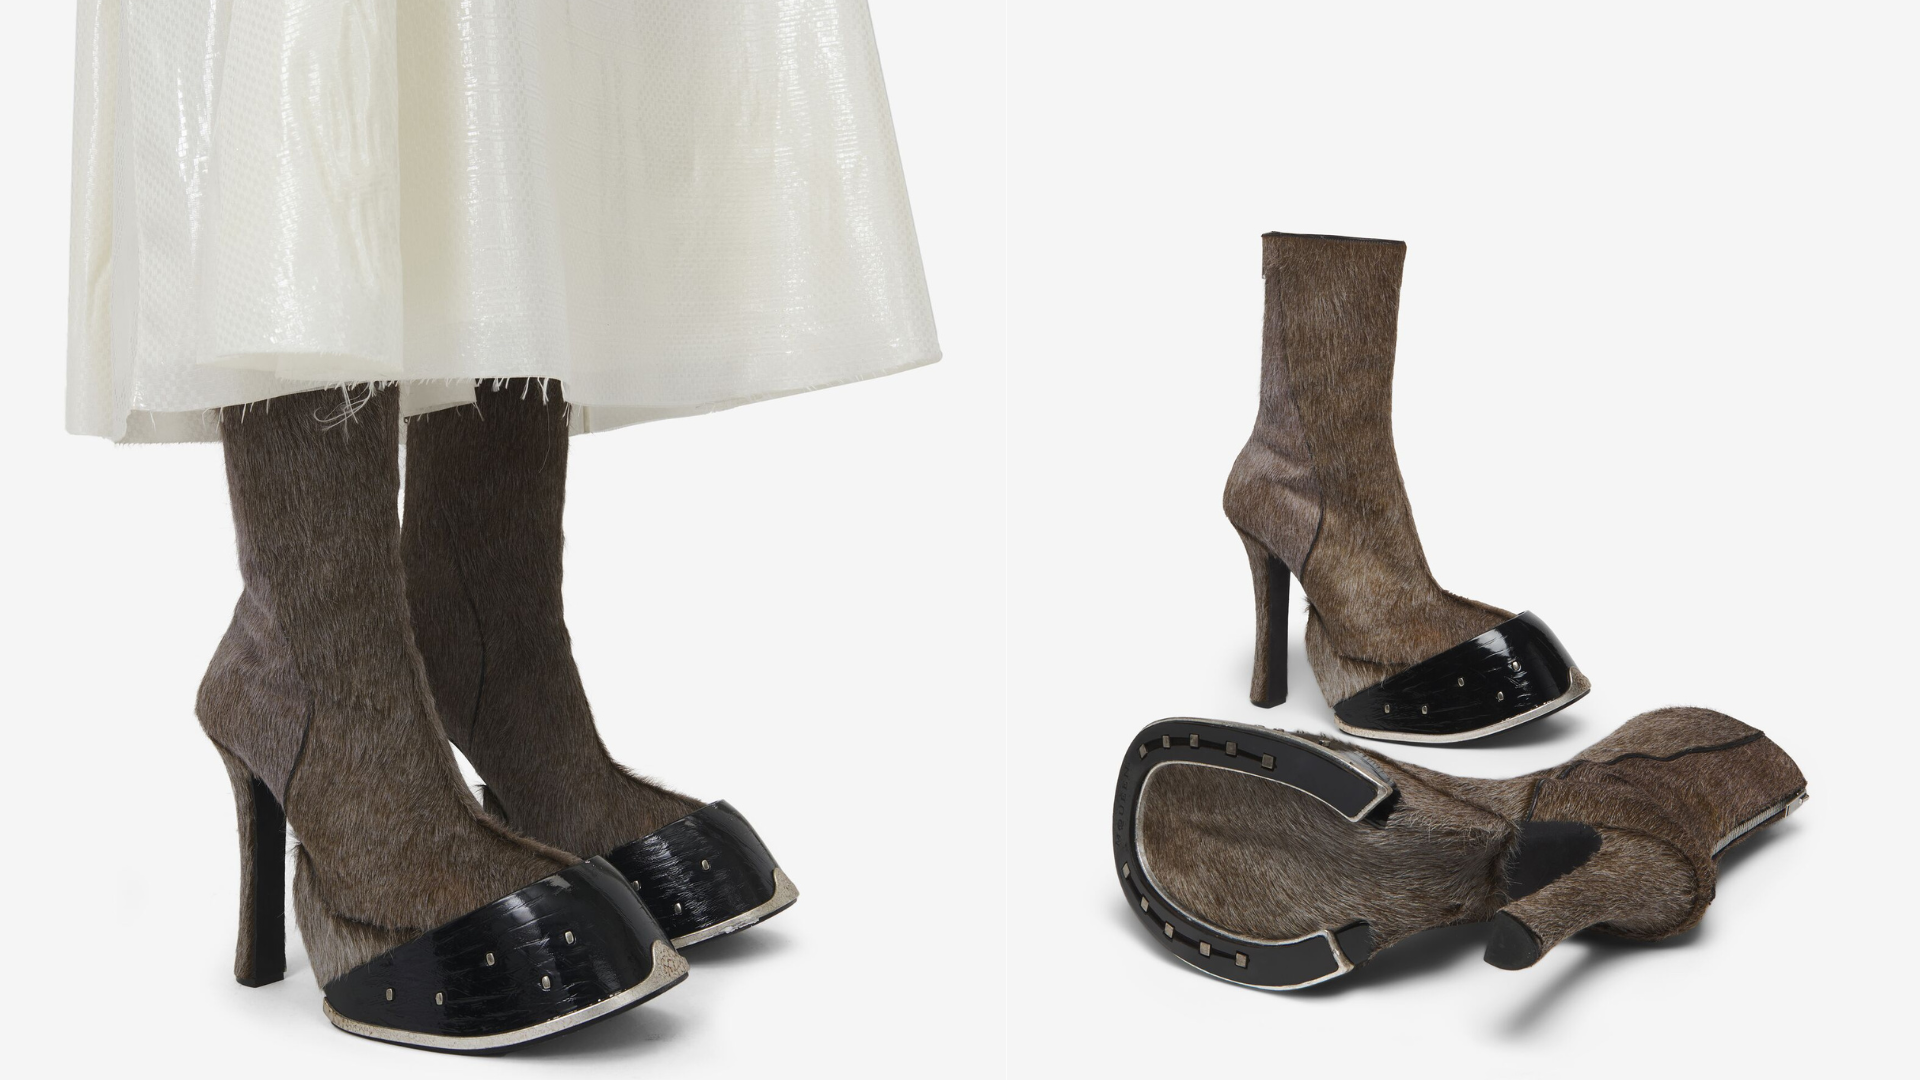 Una reconocida marca de moda lanza botines que imitan pezuñas de animales y ya están agotadas